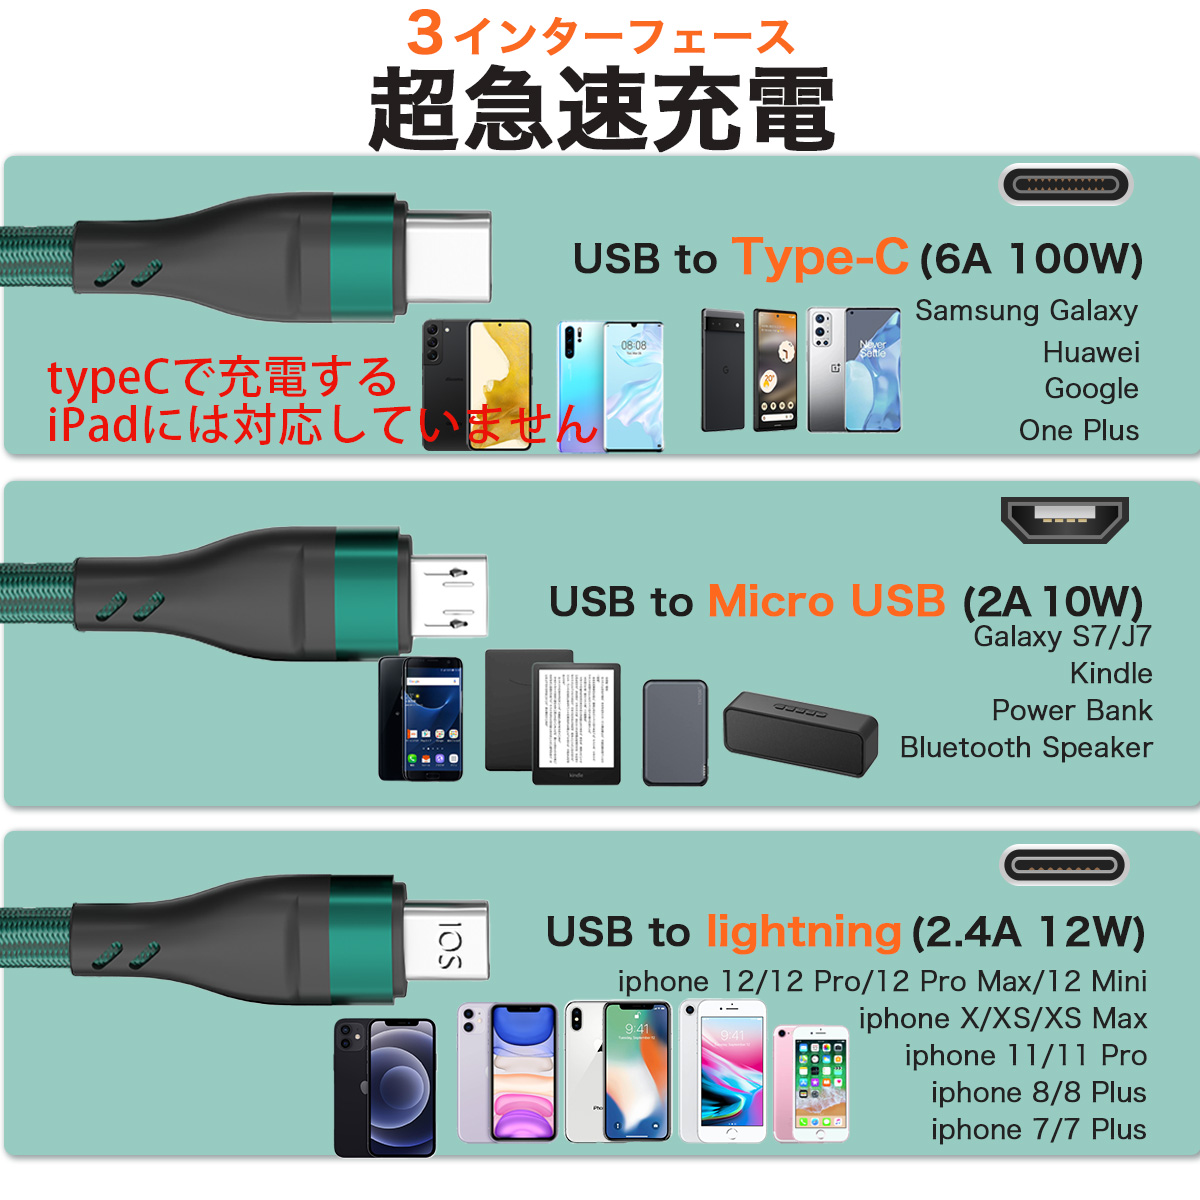 usb ケーブル type-c 急速 充電  3in1 iPhone データ転送 6a ライトニング タイプC TypeC スマホ 携帯 充電 コード iPad アンドロイド 60日保証